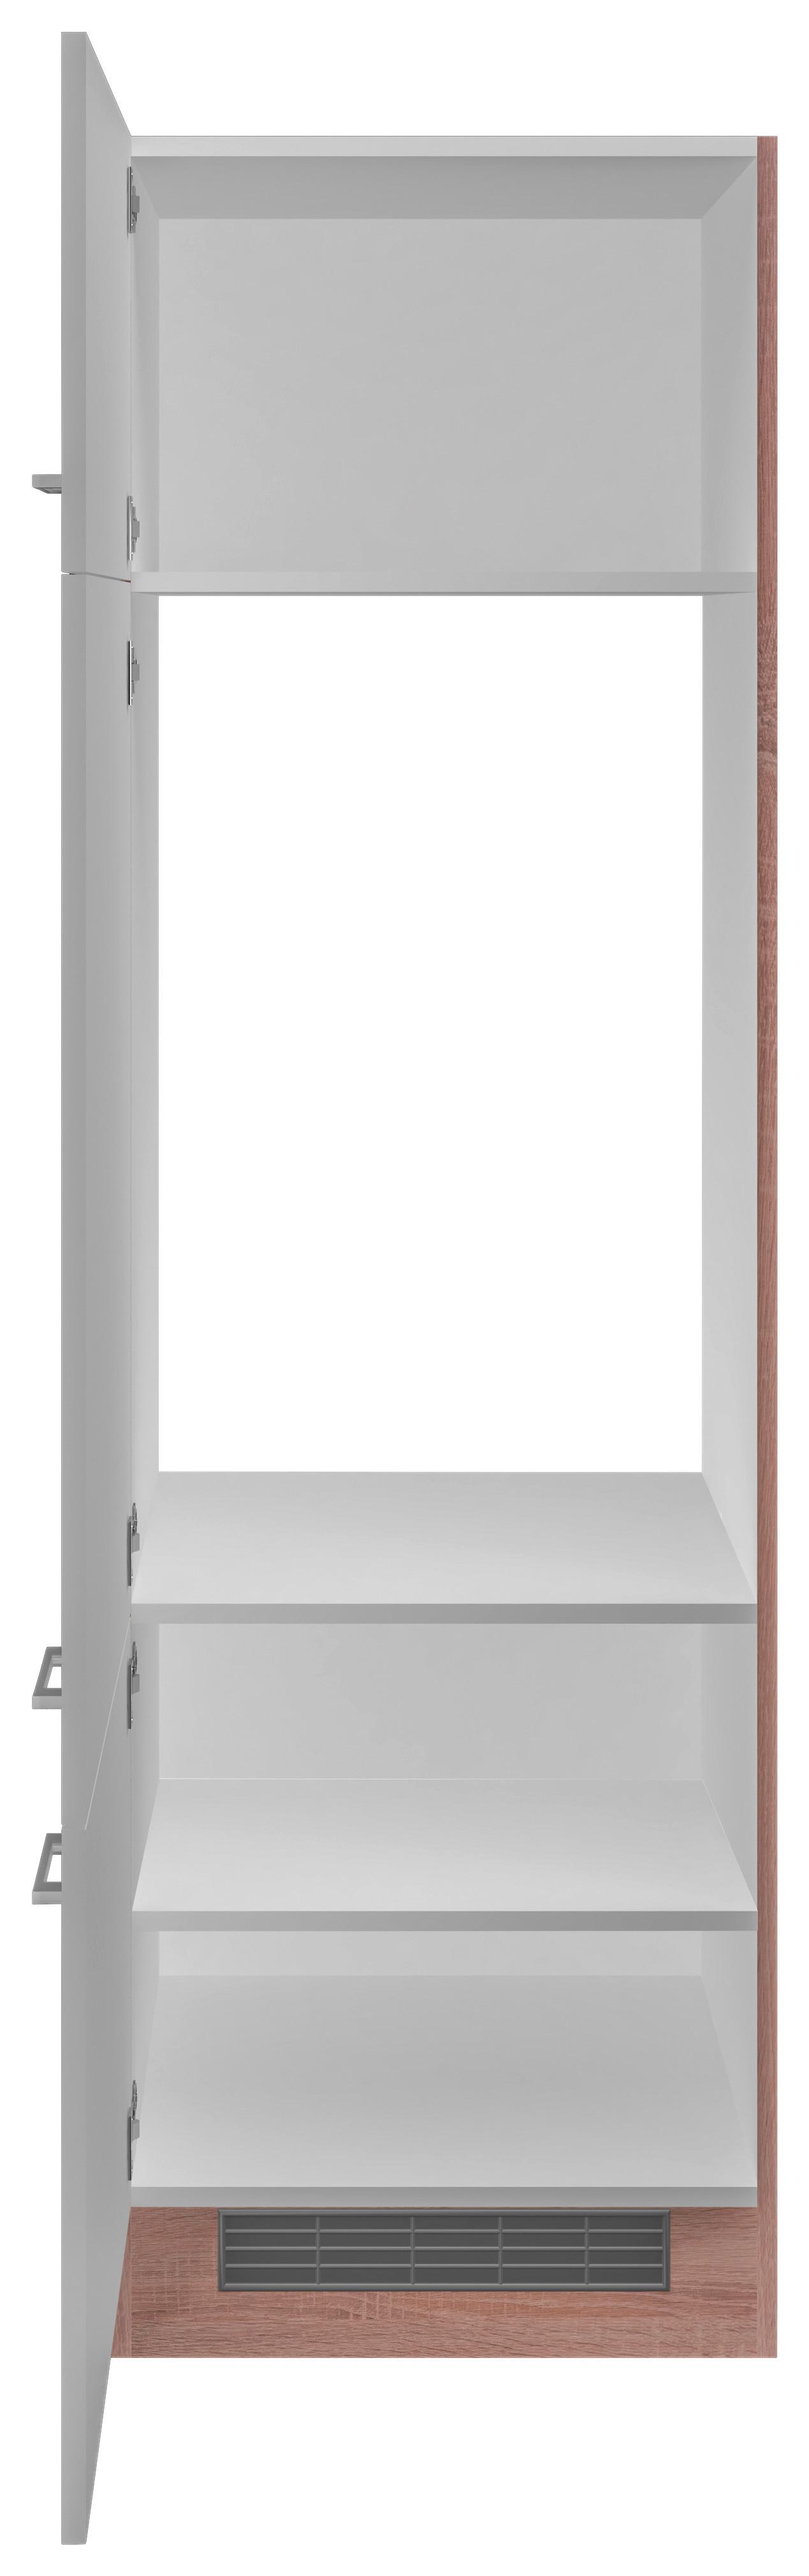 Skříňka Na Spotřebiče Samoa  Git60 - bílá/barvy dubu, Konvenční, kompozitní dřevo/plast (60/200/57cm)